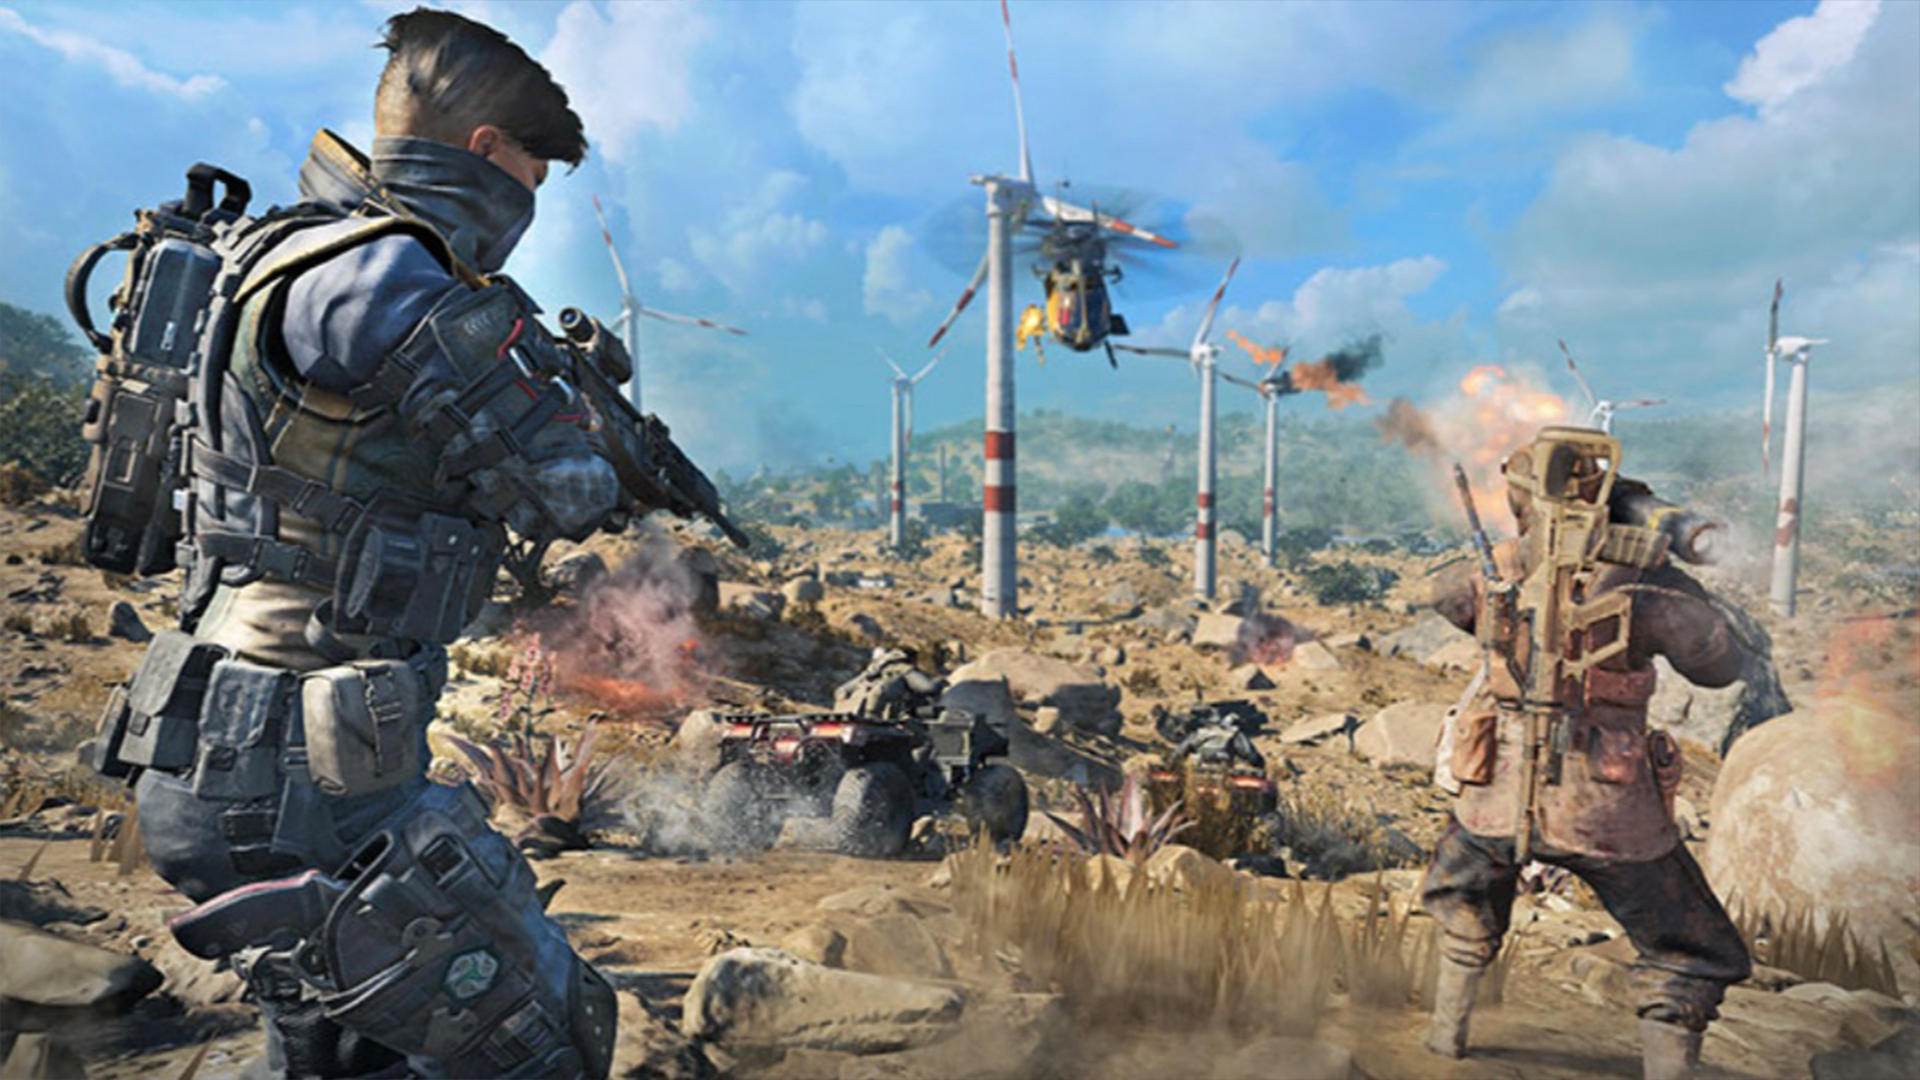 Capture d'écran de Call of Duty: Black Ops 4 pour le mode Blackout